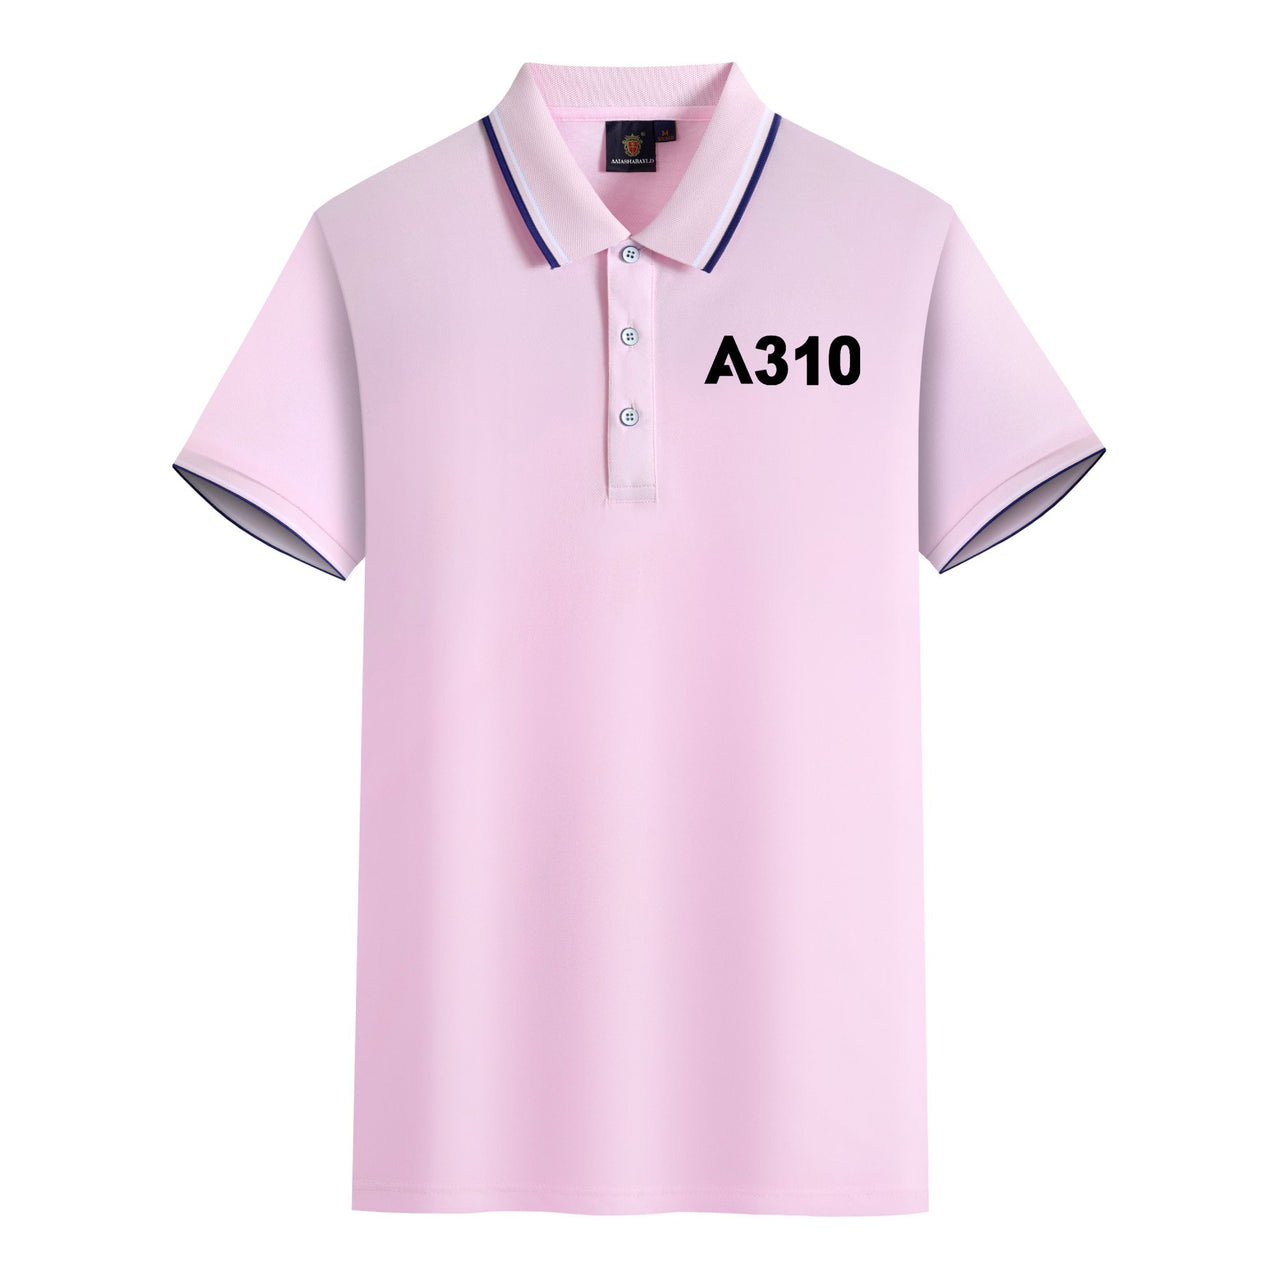 A310 Flat Text Designed Stylish Polo T-Shirts